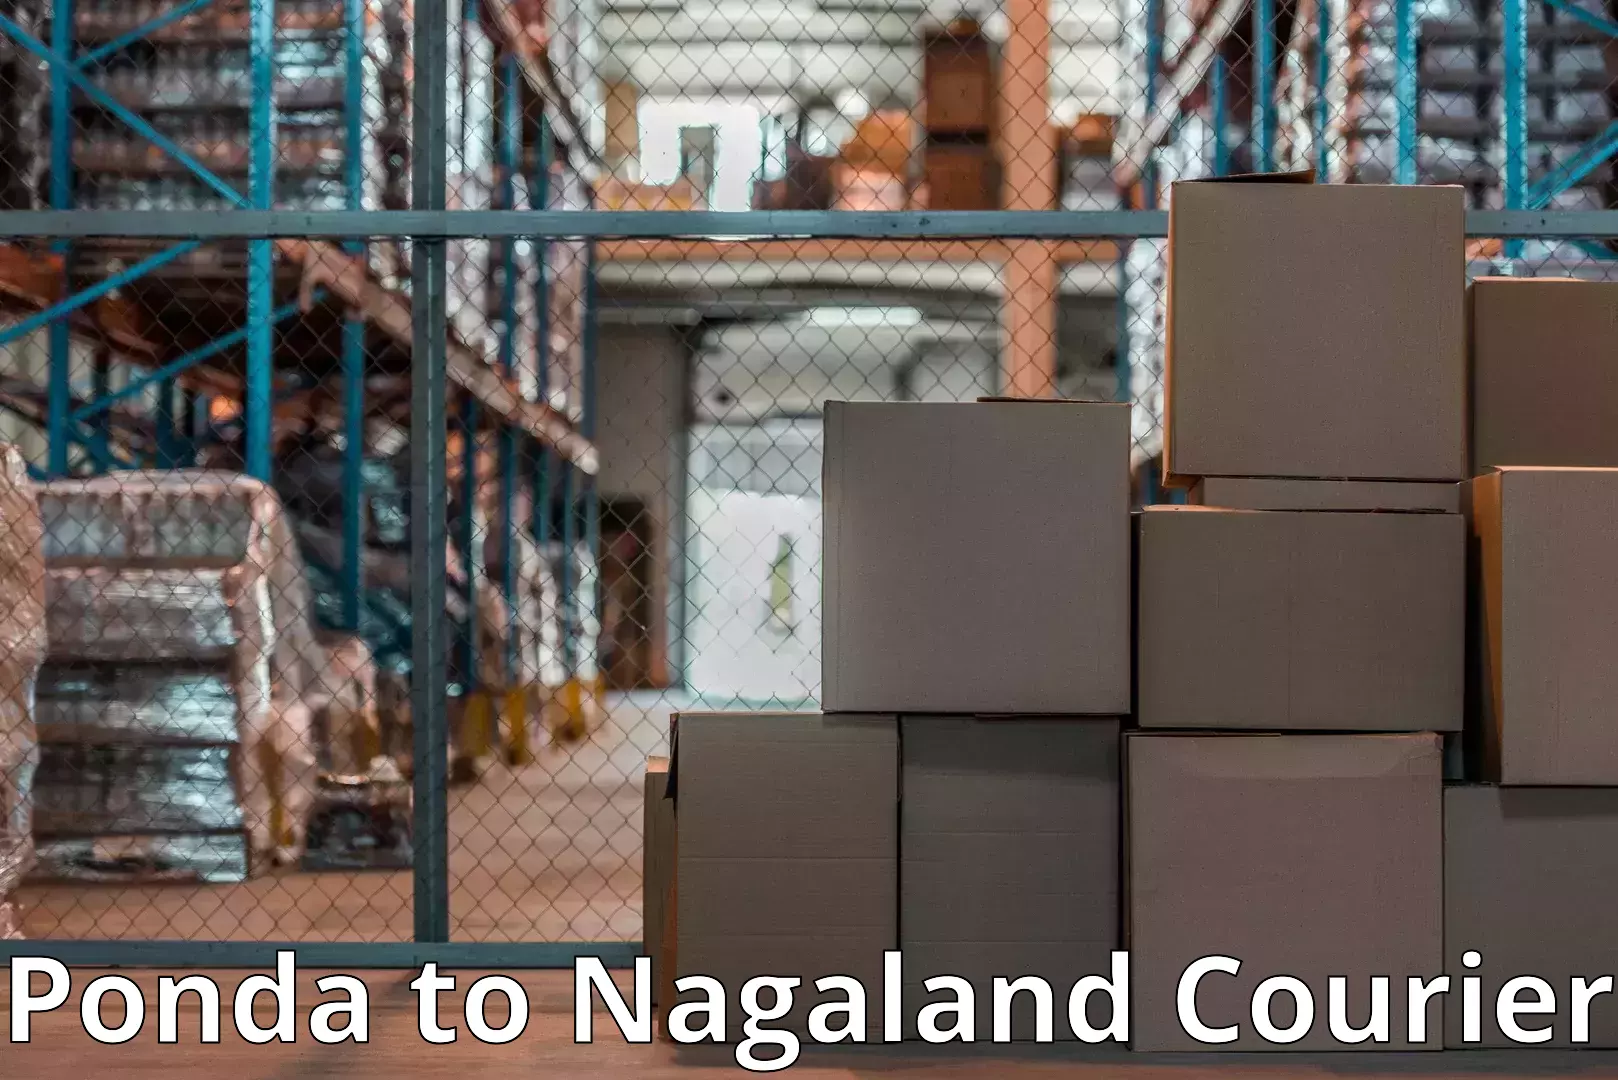 High-quality moving services Ponda to Nagaland